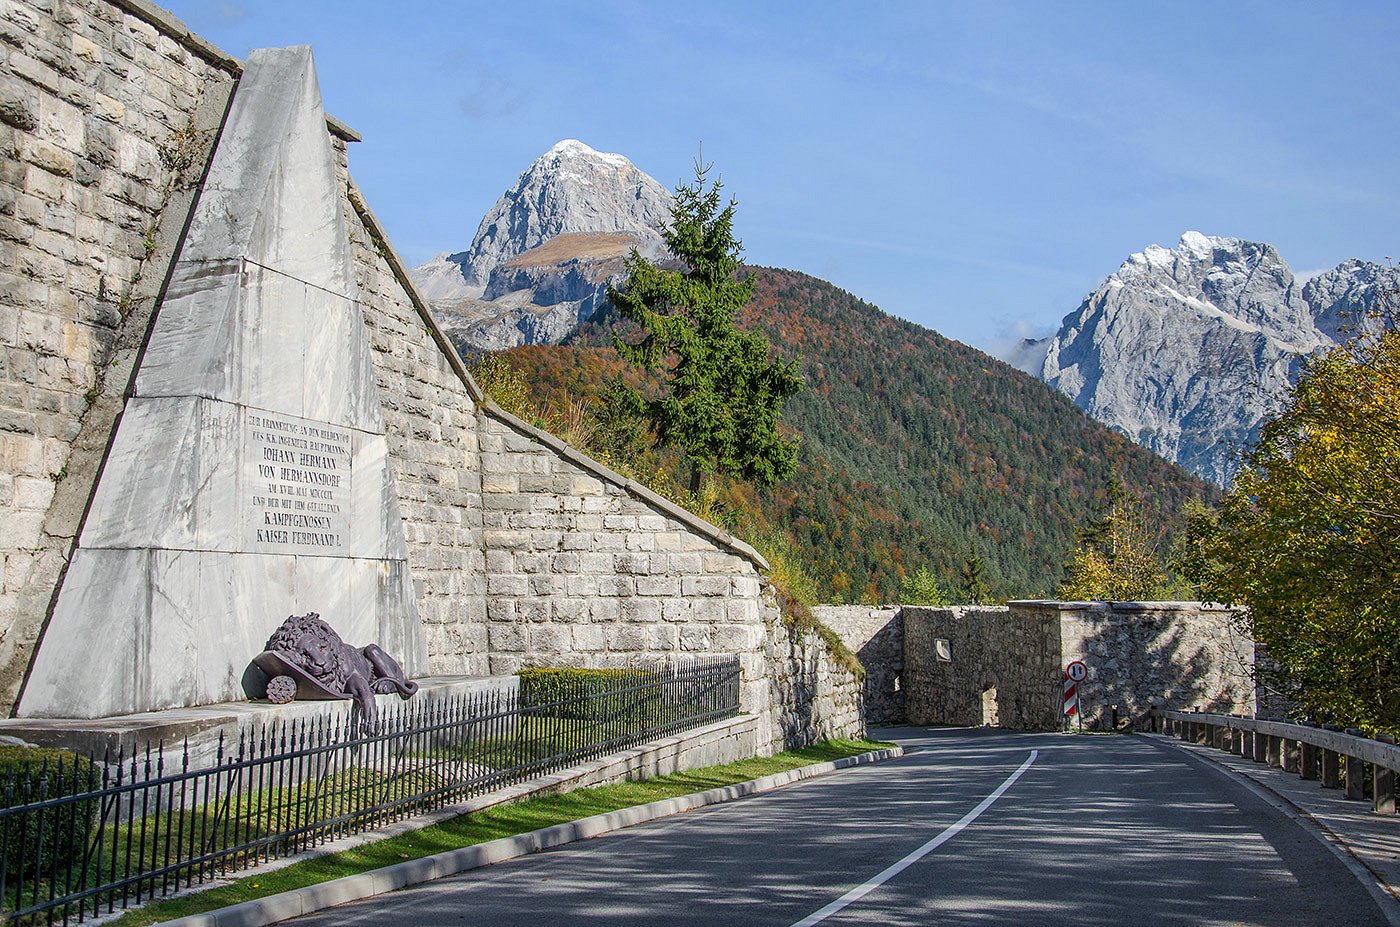 Denkmal mit einer Statue eines verwundeten Löwen entlang der Straße nach Bovec, im Hintergrund Mount Mangart